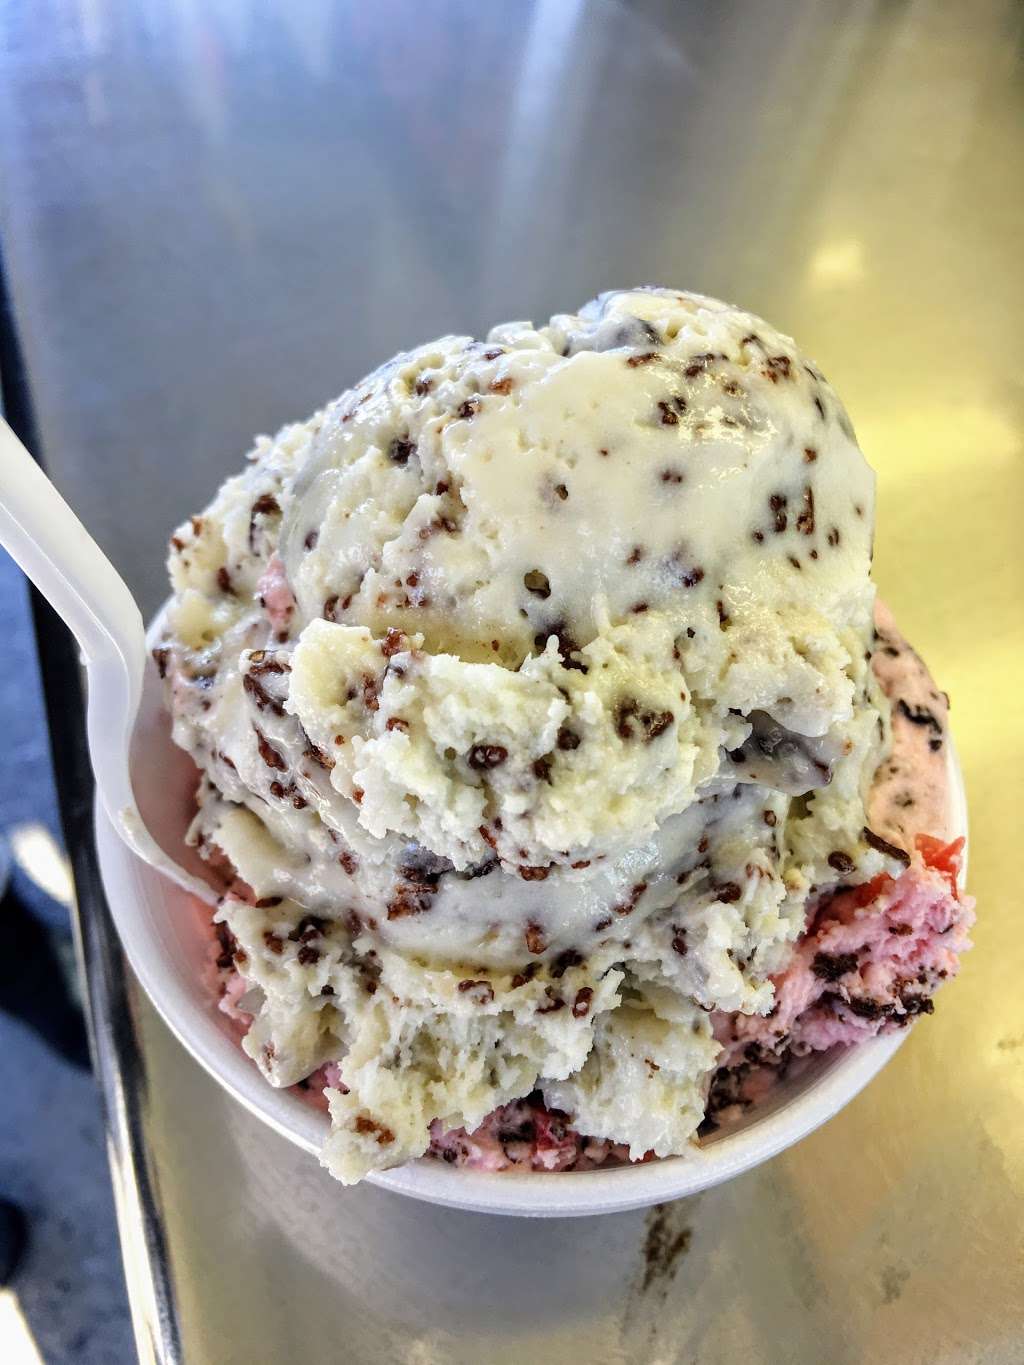 Ridgefield Ice Cream Shop | 680 Danbury Rd, Ridgefield, CT 06877 | Phone: (203) 438-3094